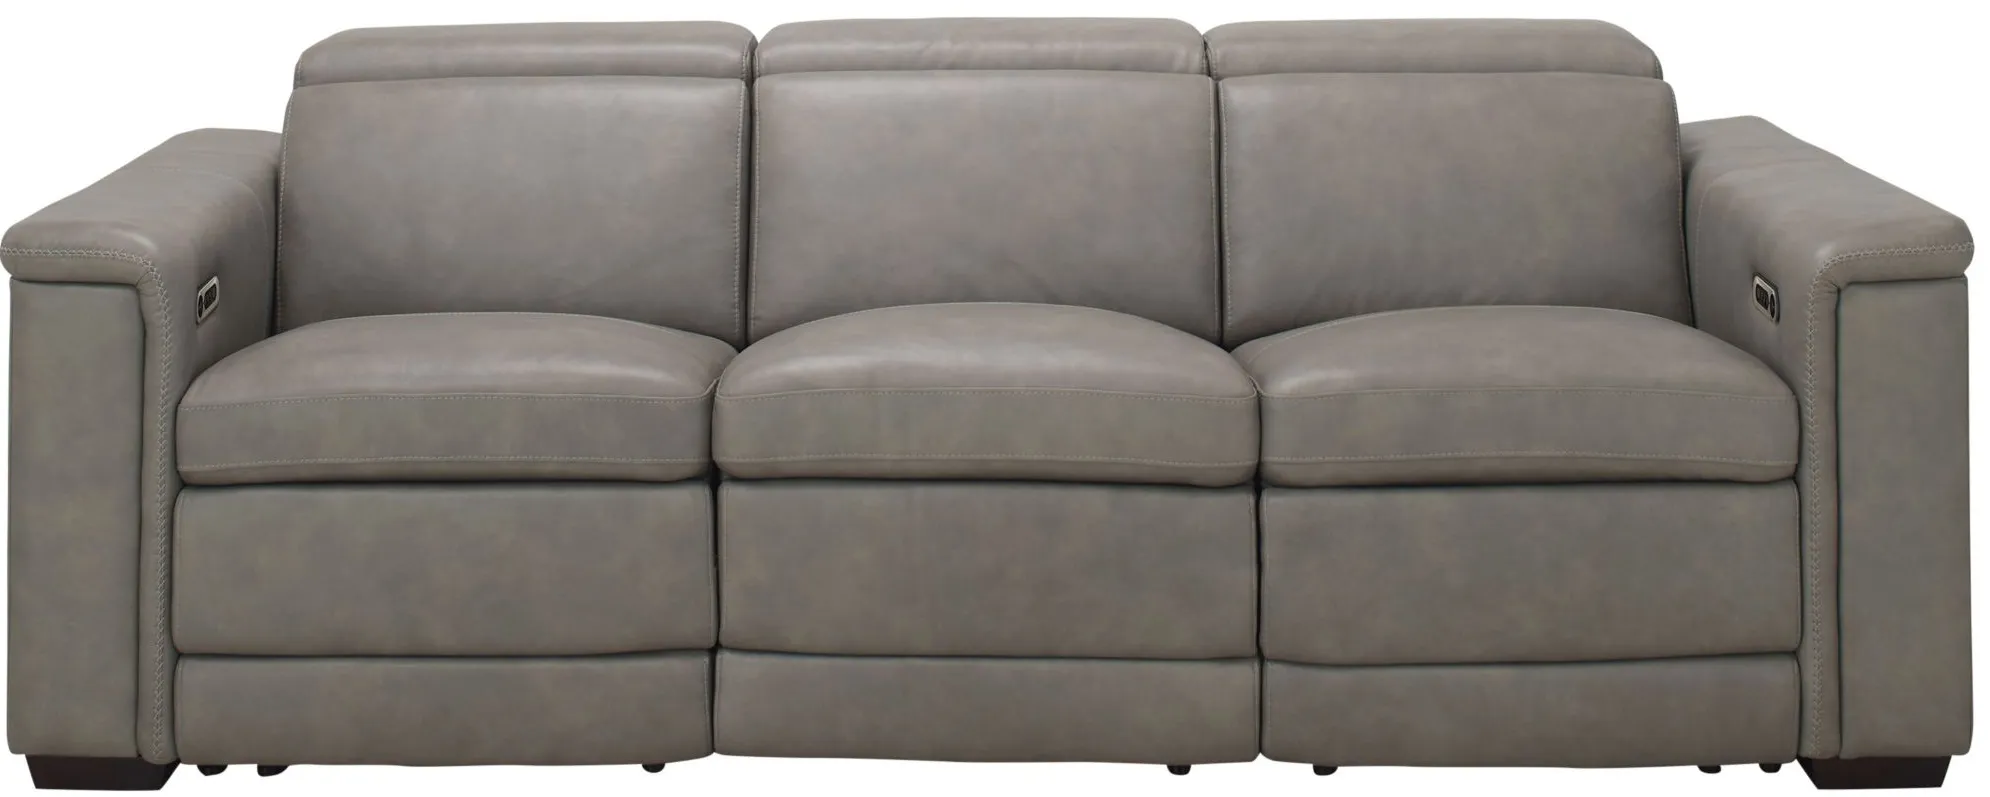 Finnegan Power Sofa w/Power Headrest in Gray by Bernhardt